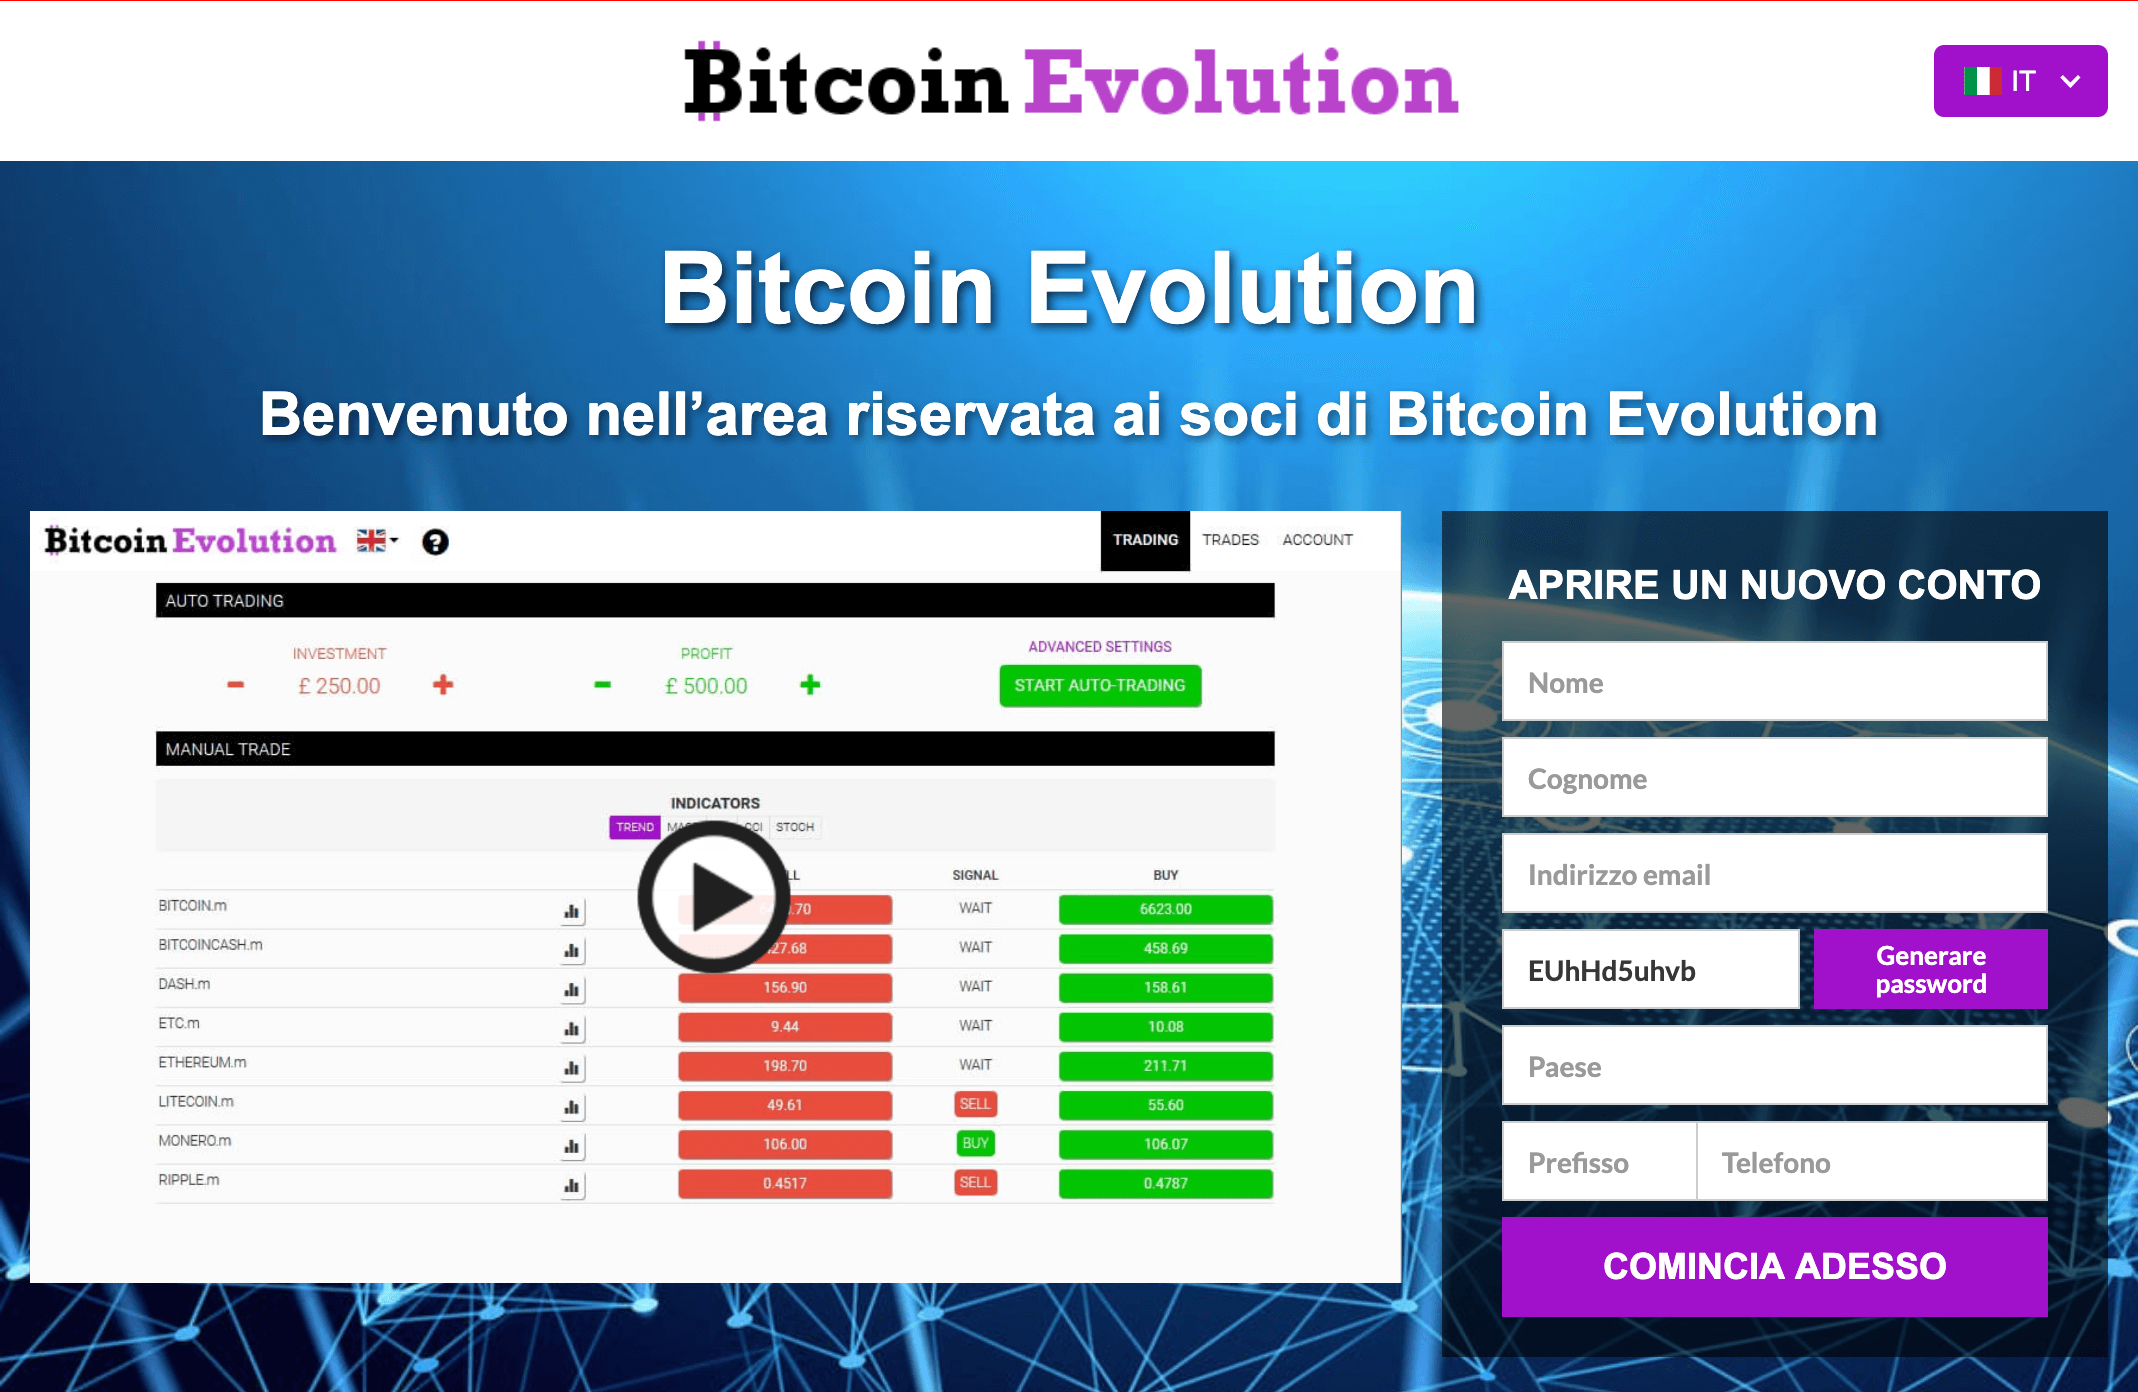 la più popolare piattaforma di trading bitcoin